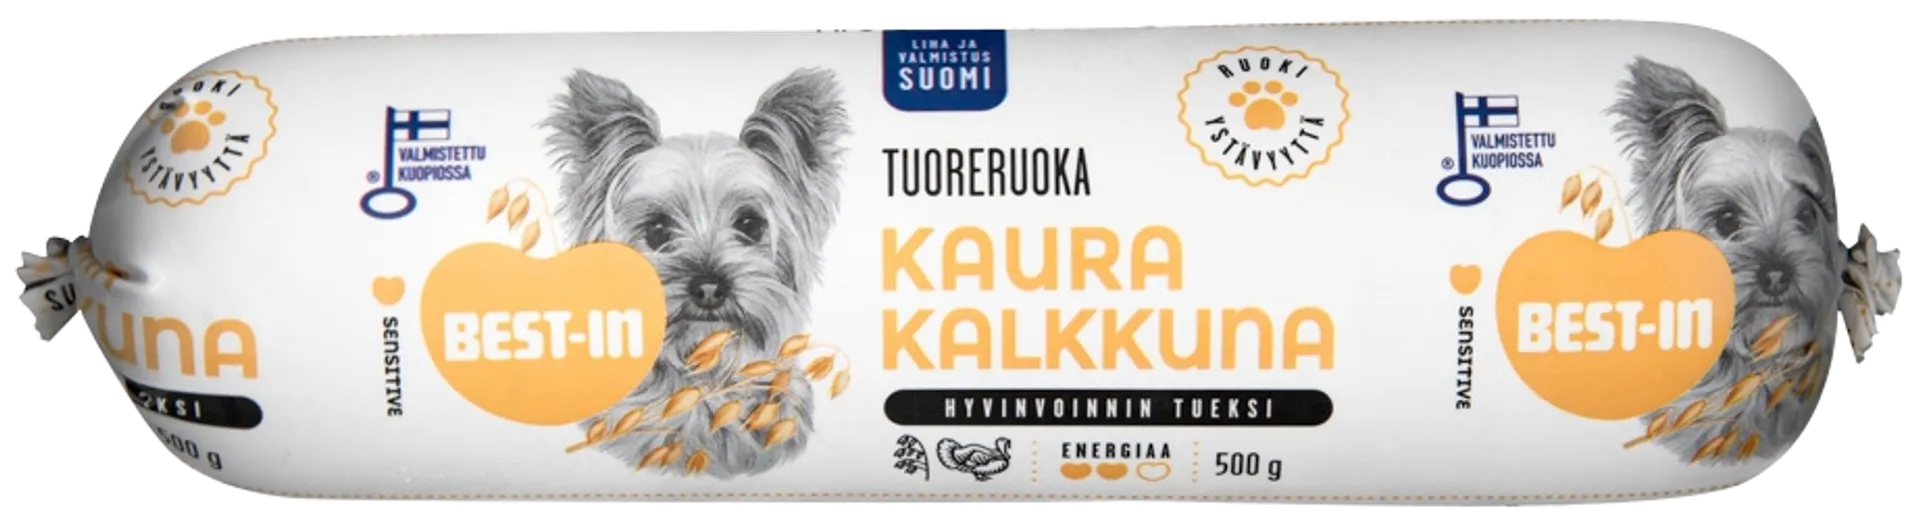 Best-In Kaura-Kalkkuna Koiran Tuoreruoka 500g - 1